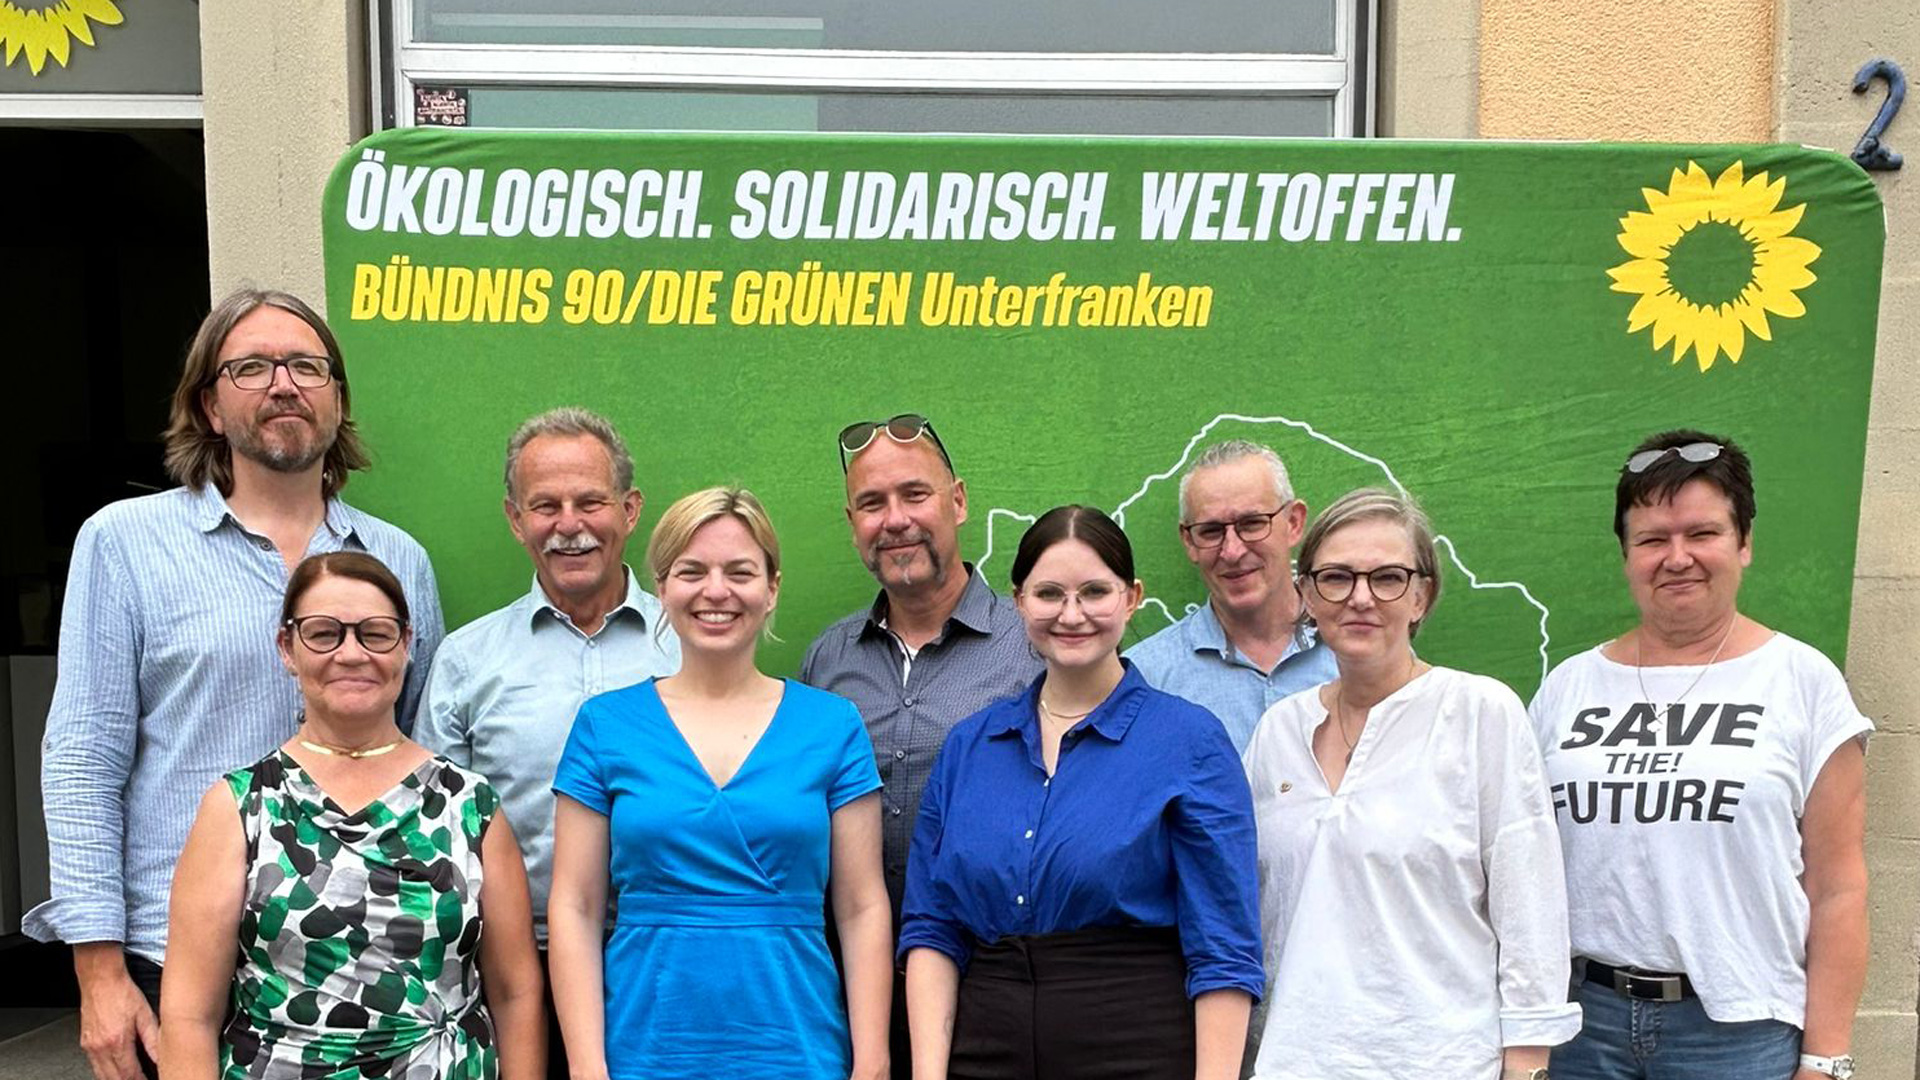 MdL Paul Knoblach (dritter von links) gemeinsam mit der Fraktionsvorsitzenden der Landtags-Grünen Katharina Schulze (vierte von links) zu Besuch beim Grünen Kreisverband Haßberge.